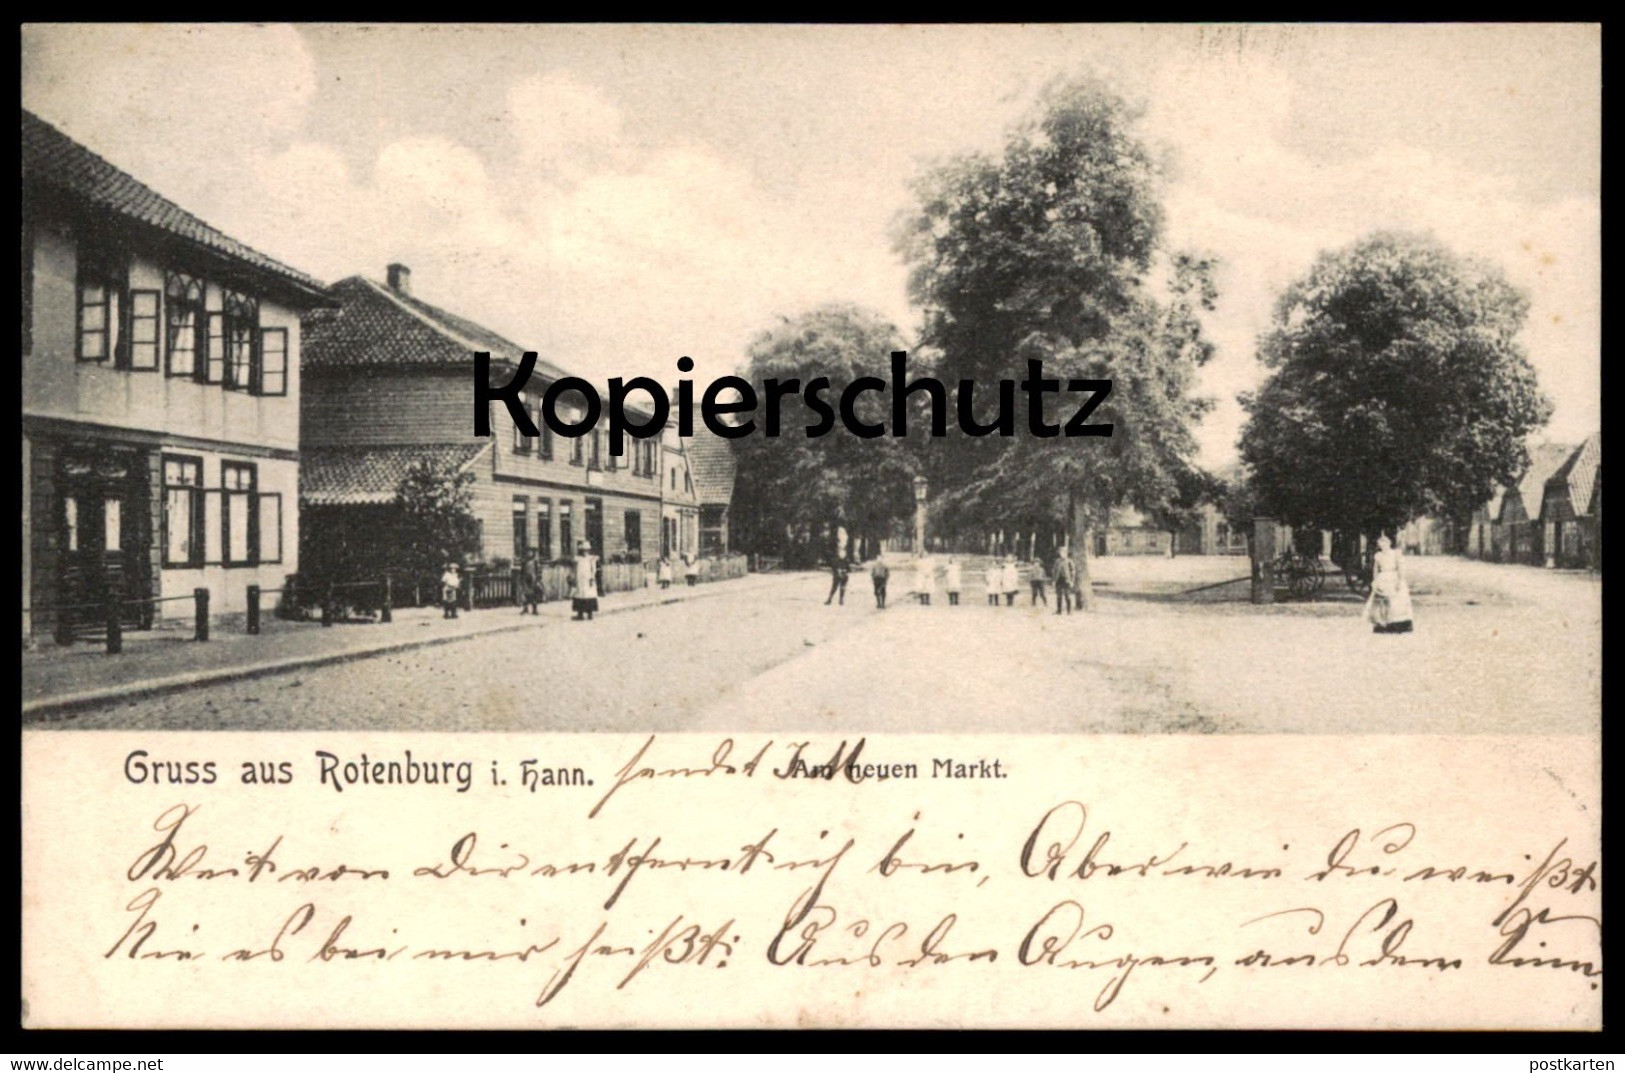 ALTE POSTKARTE GRUSS AUS ROTENBURG WÜMME IN HANNOVER AM NEUEN MARKT ANKUNFTSSTEMPEL BREMEN OBERNEULAND 1904 AK - Rotenburg (Wümme)